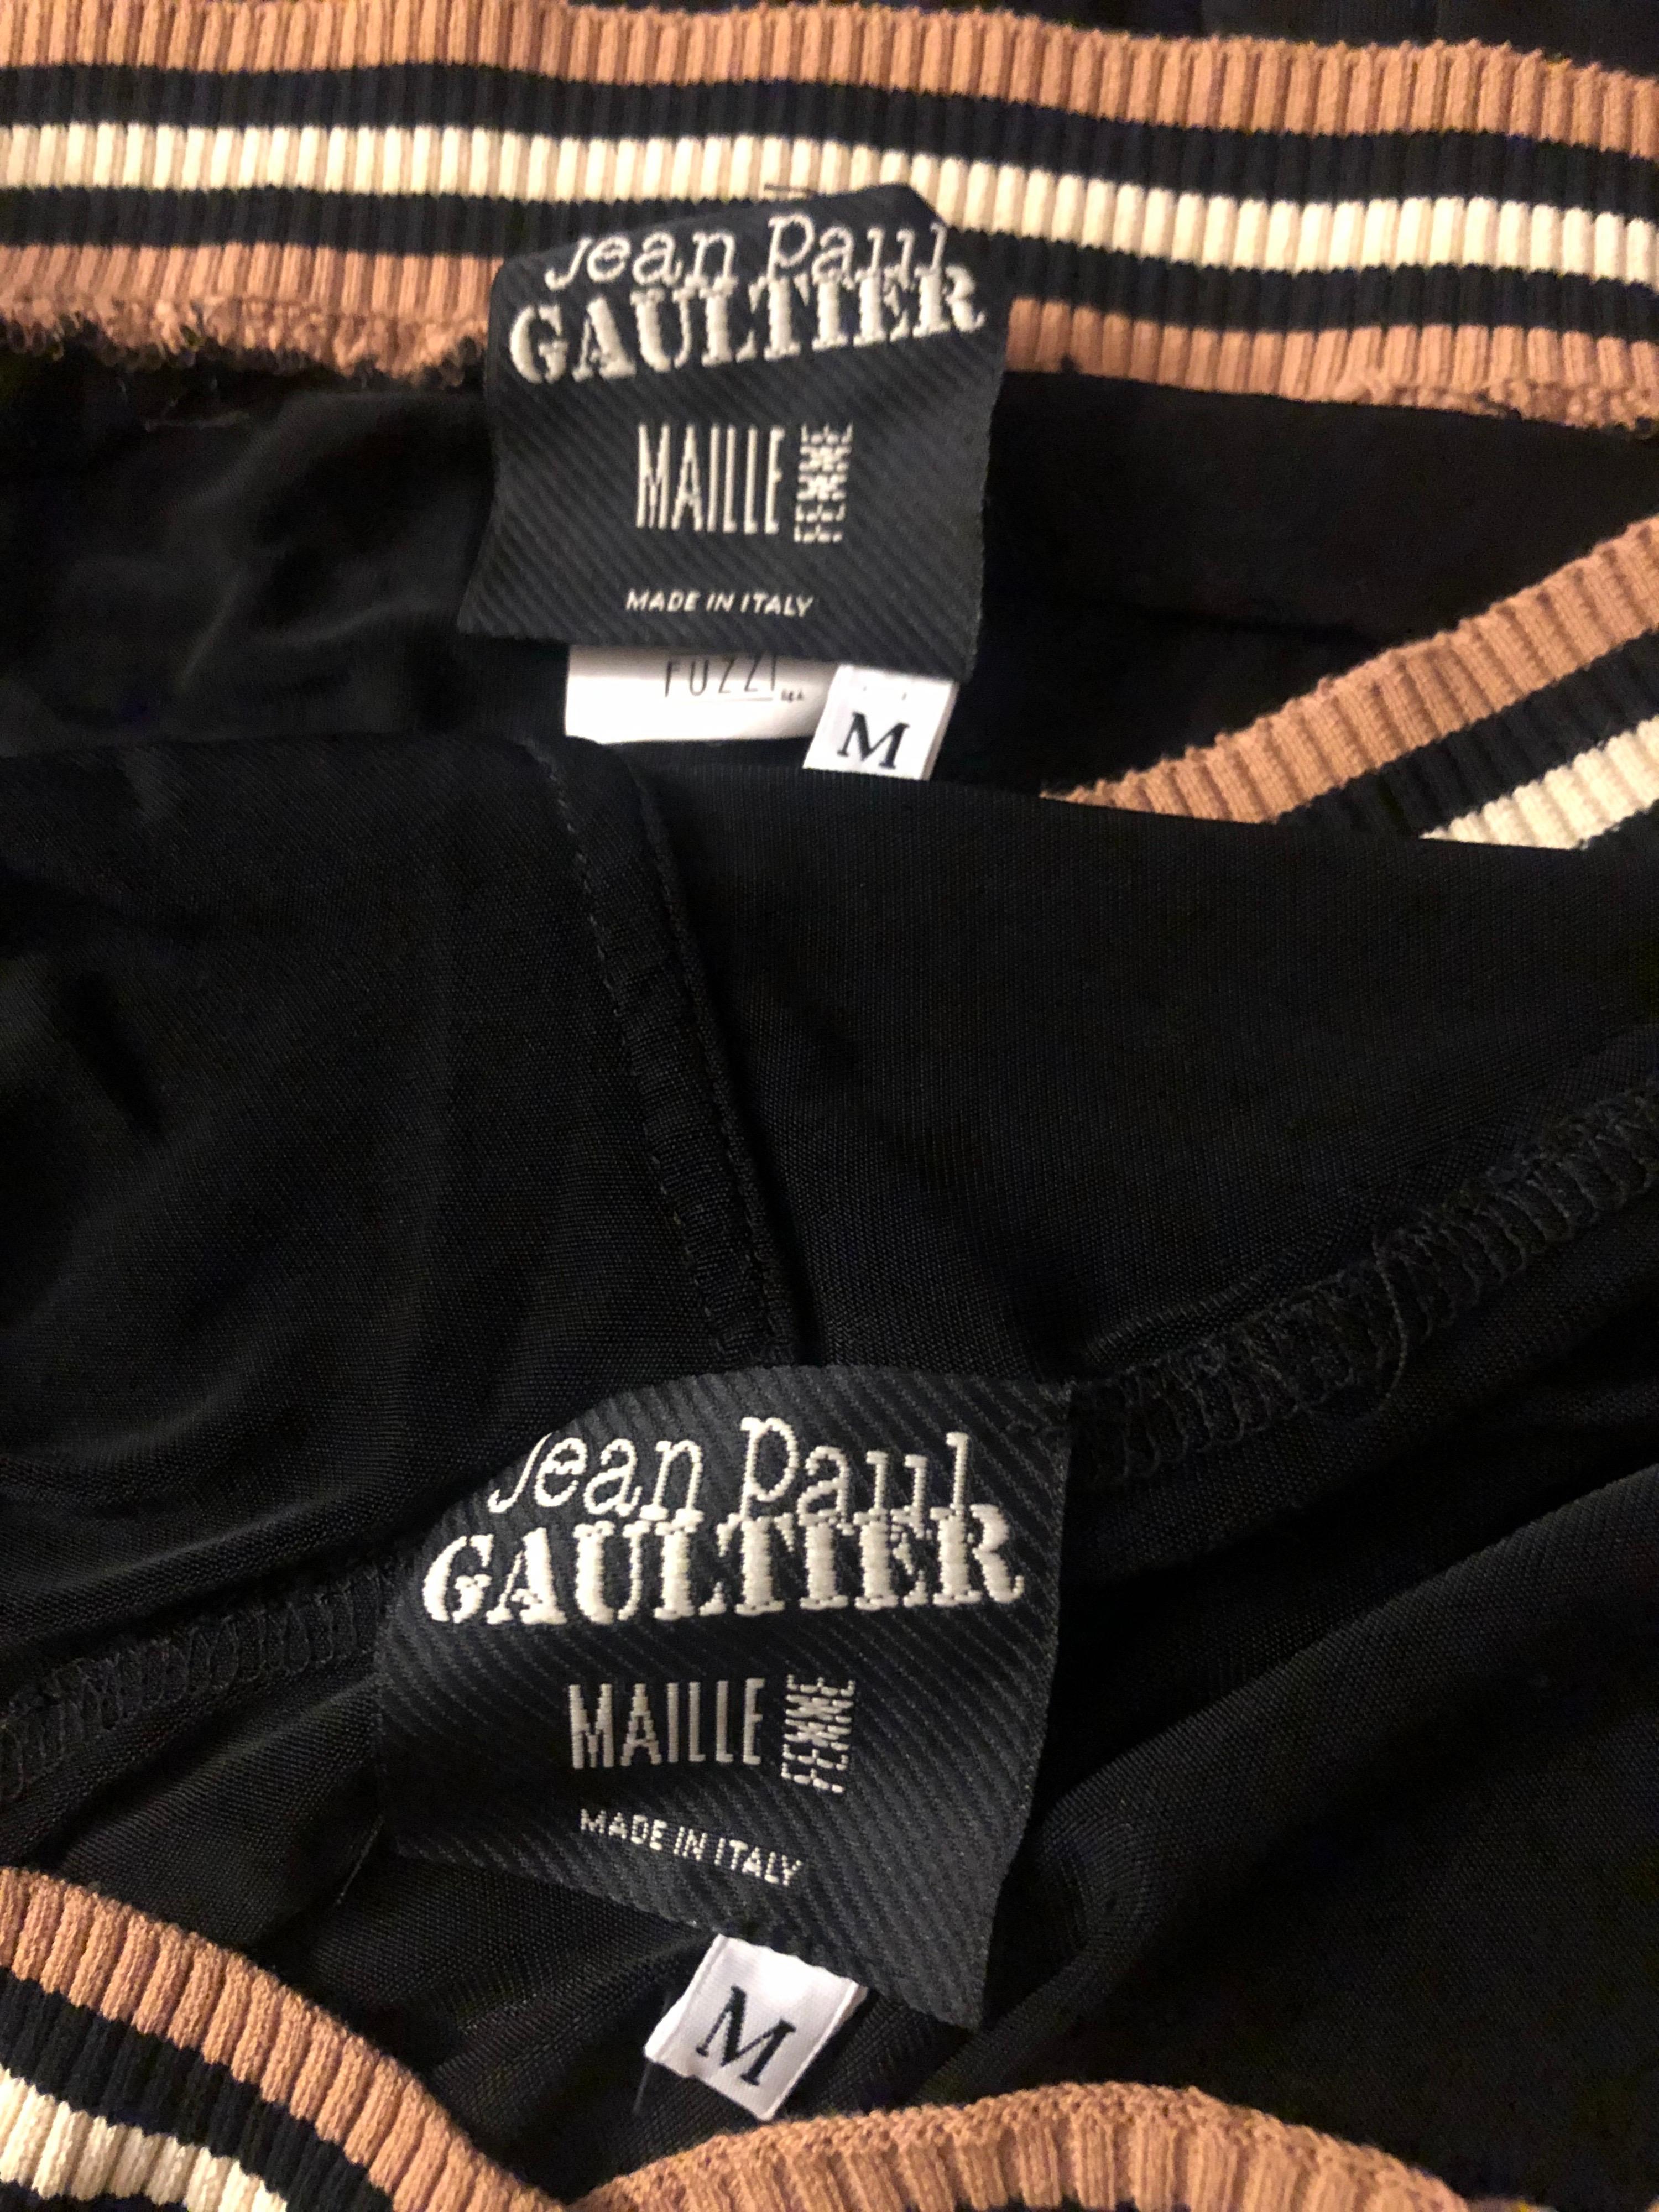 Jean Paul Gaultier S/S 2007 Hooded Black Cutout Top & Pants 2 Piece Set Ensemble 1